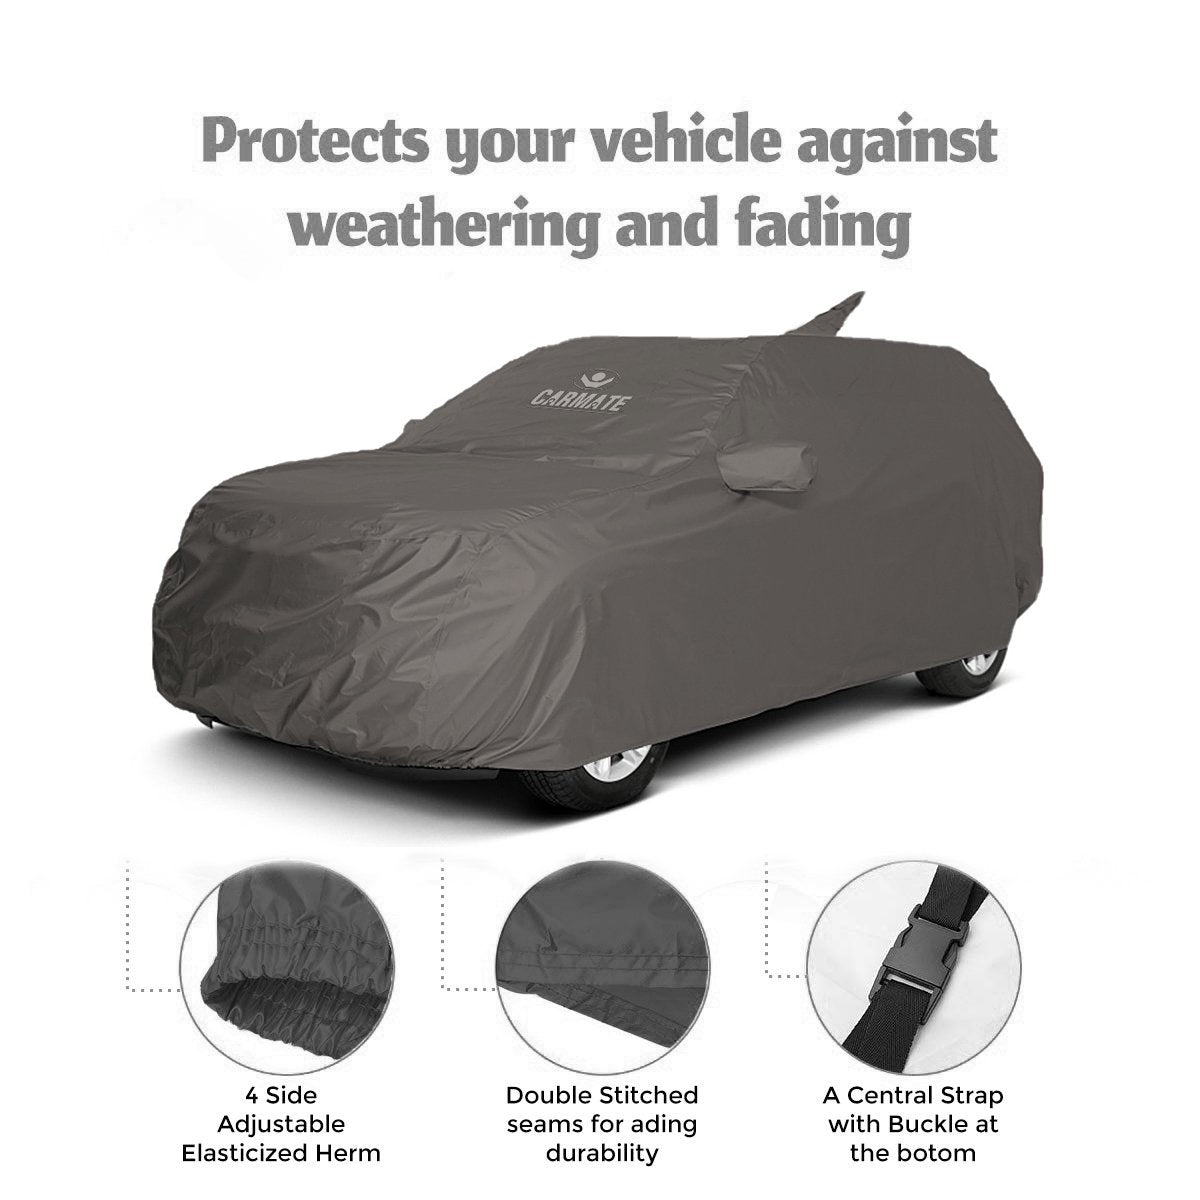 Carmate Car Body Cover 100% Waterproof Pride (Grey) for Renault - Triber - CARMATE®